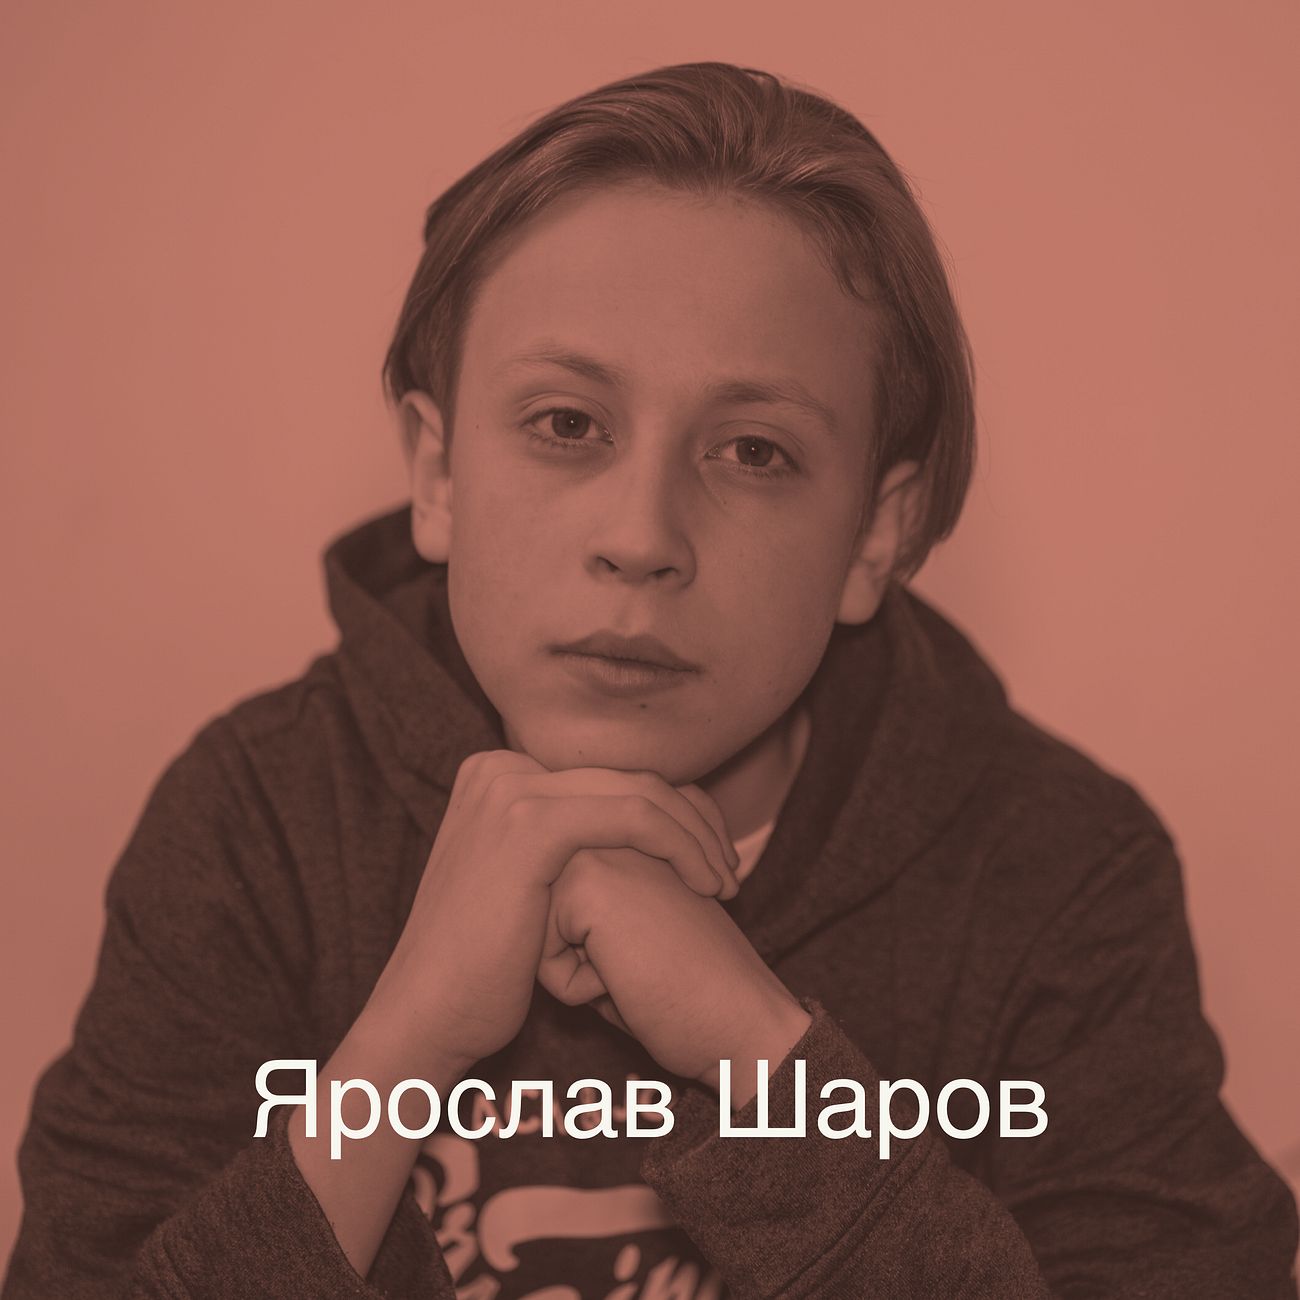 Ярослав Шаров - юный актер театра и кино